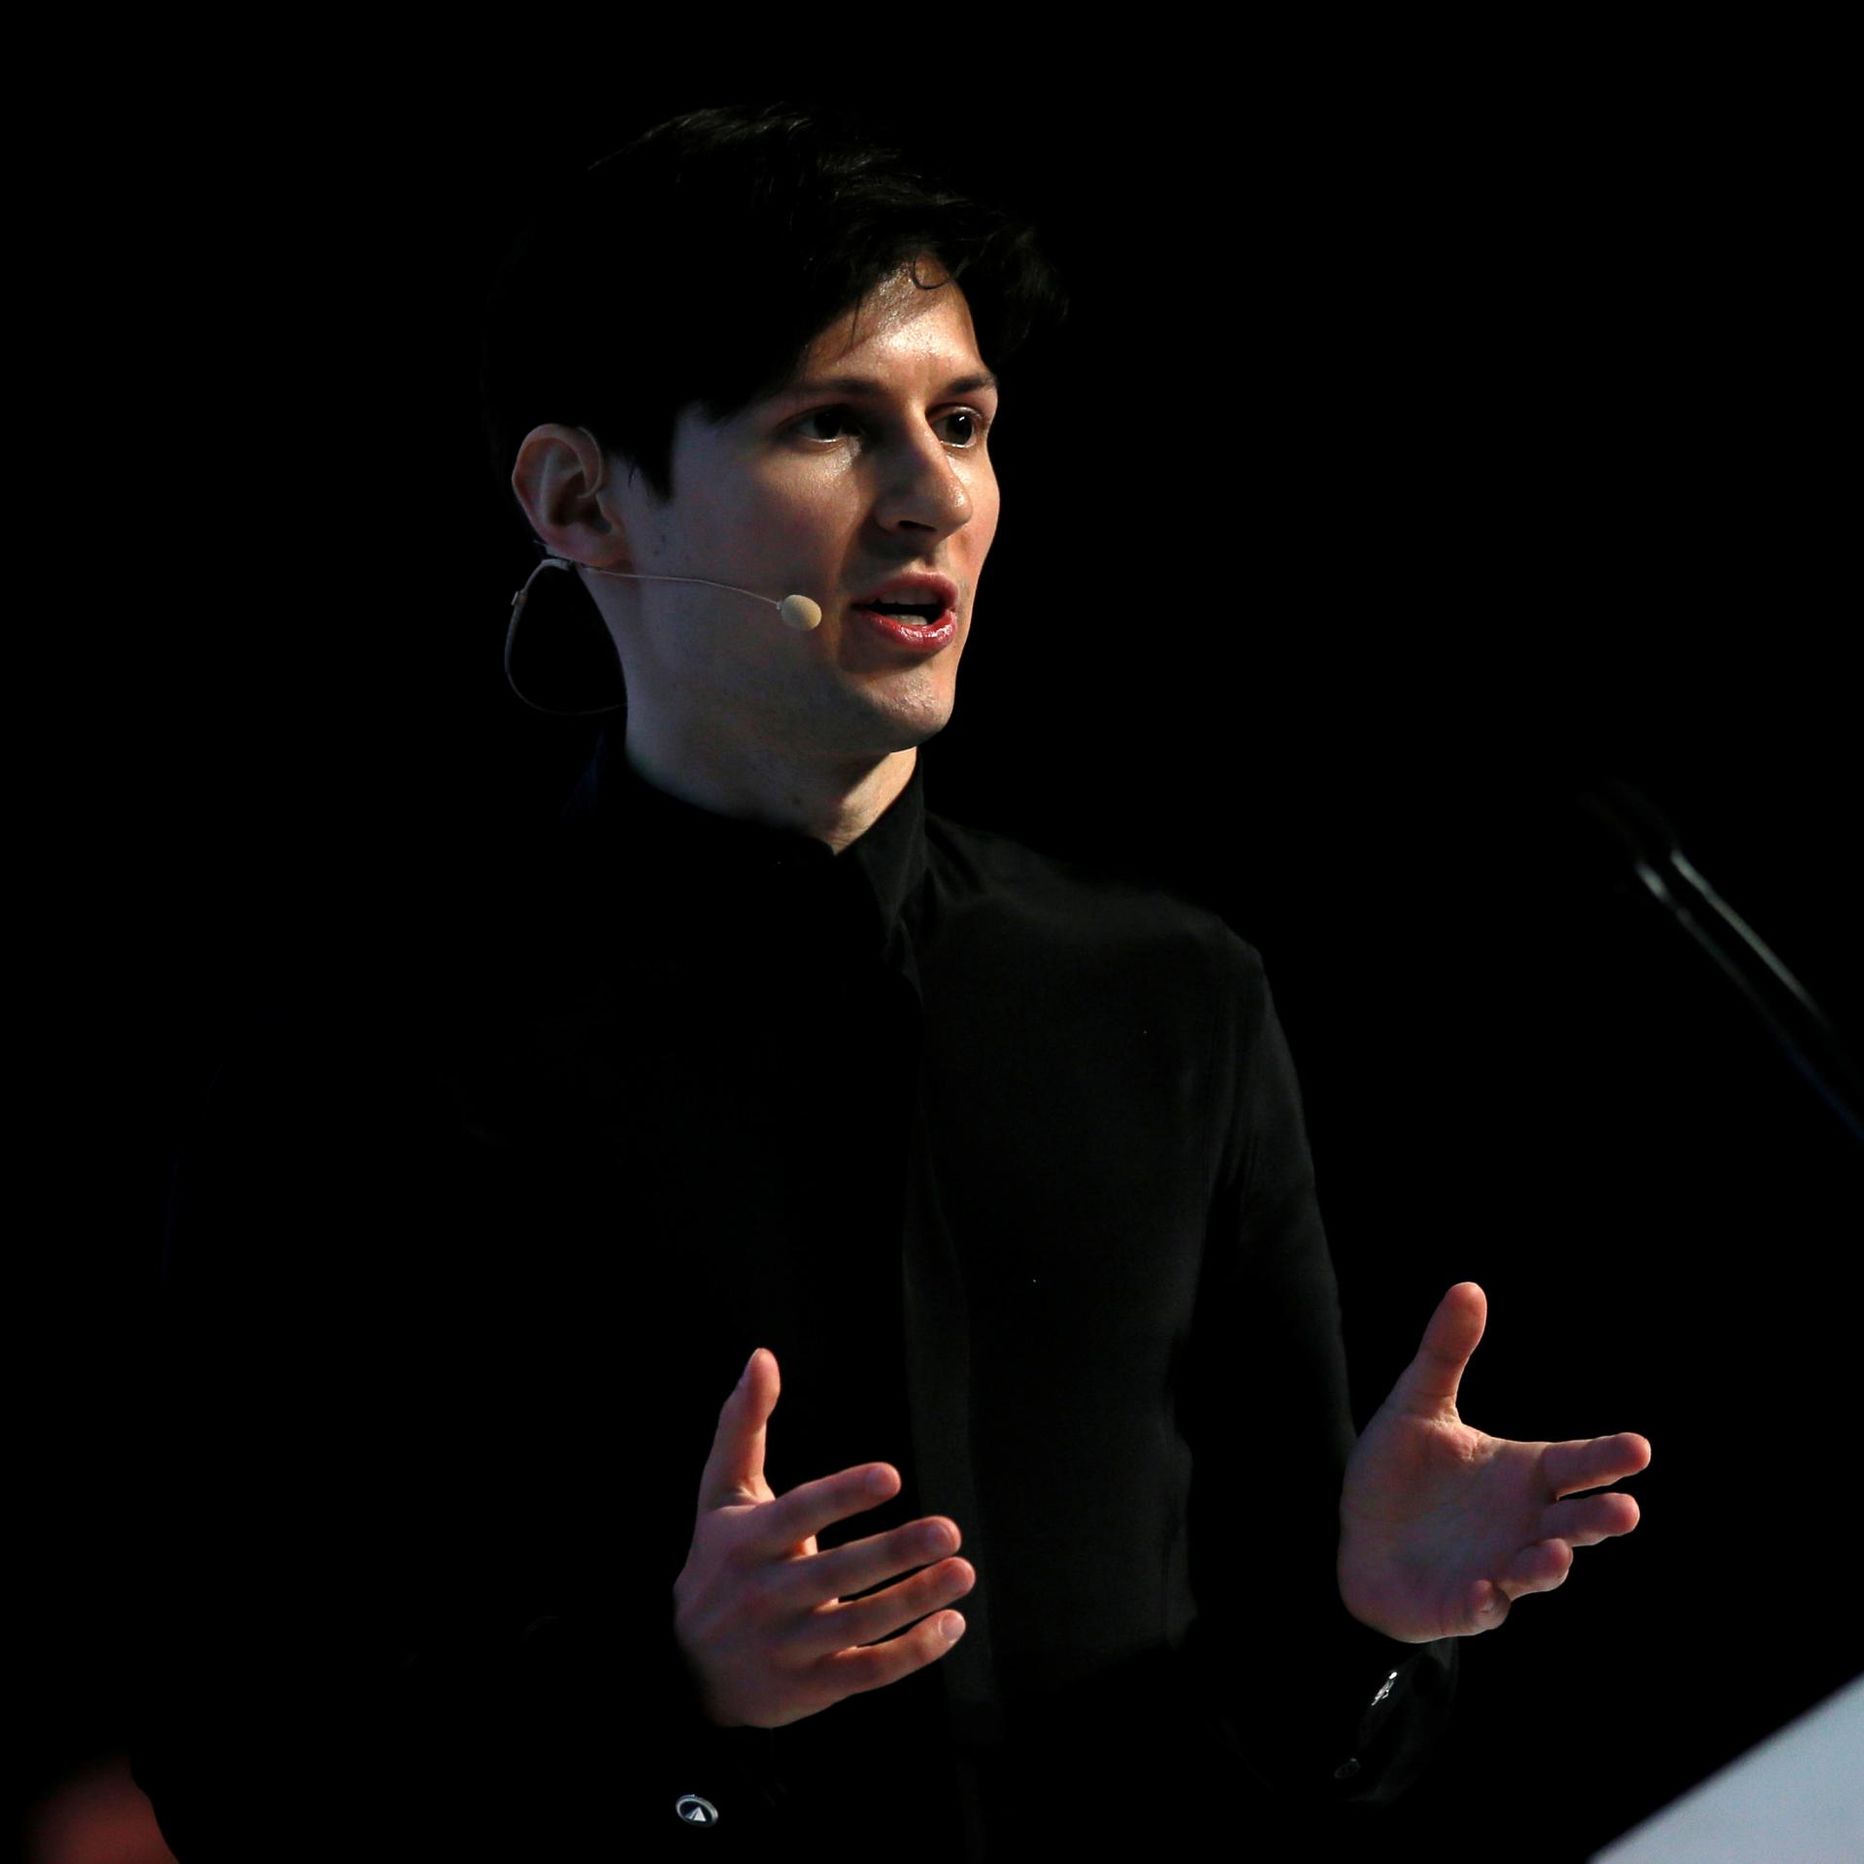 Telegrami looja ja juht Pavel Durov.